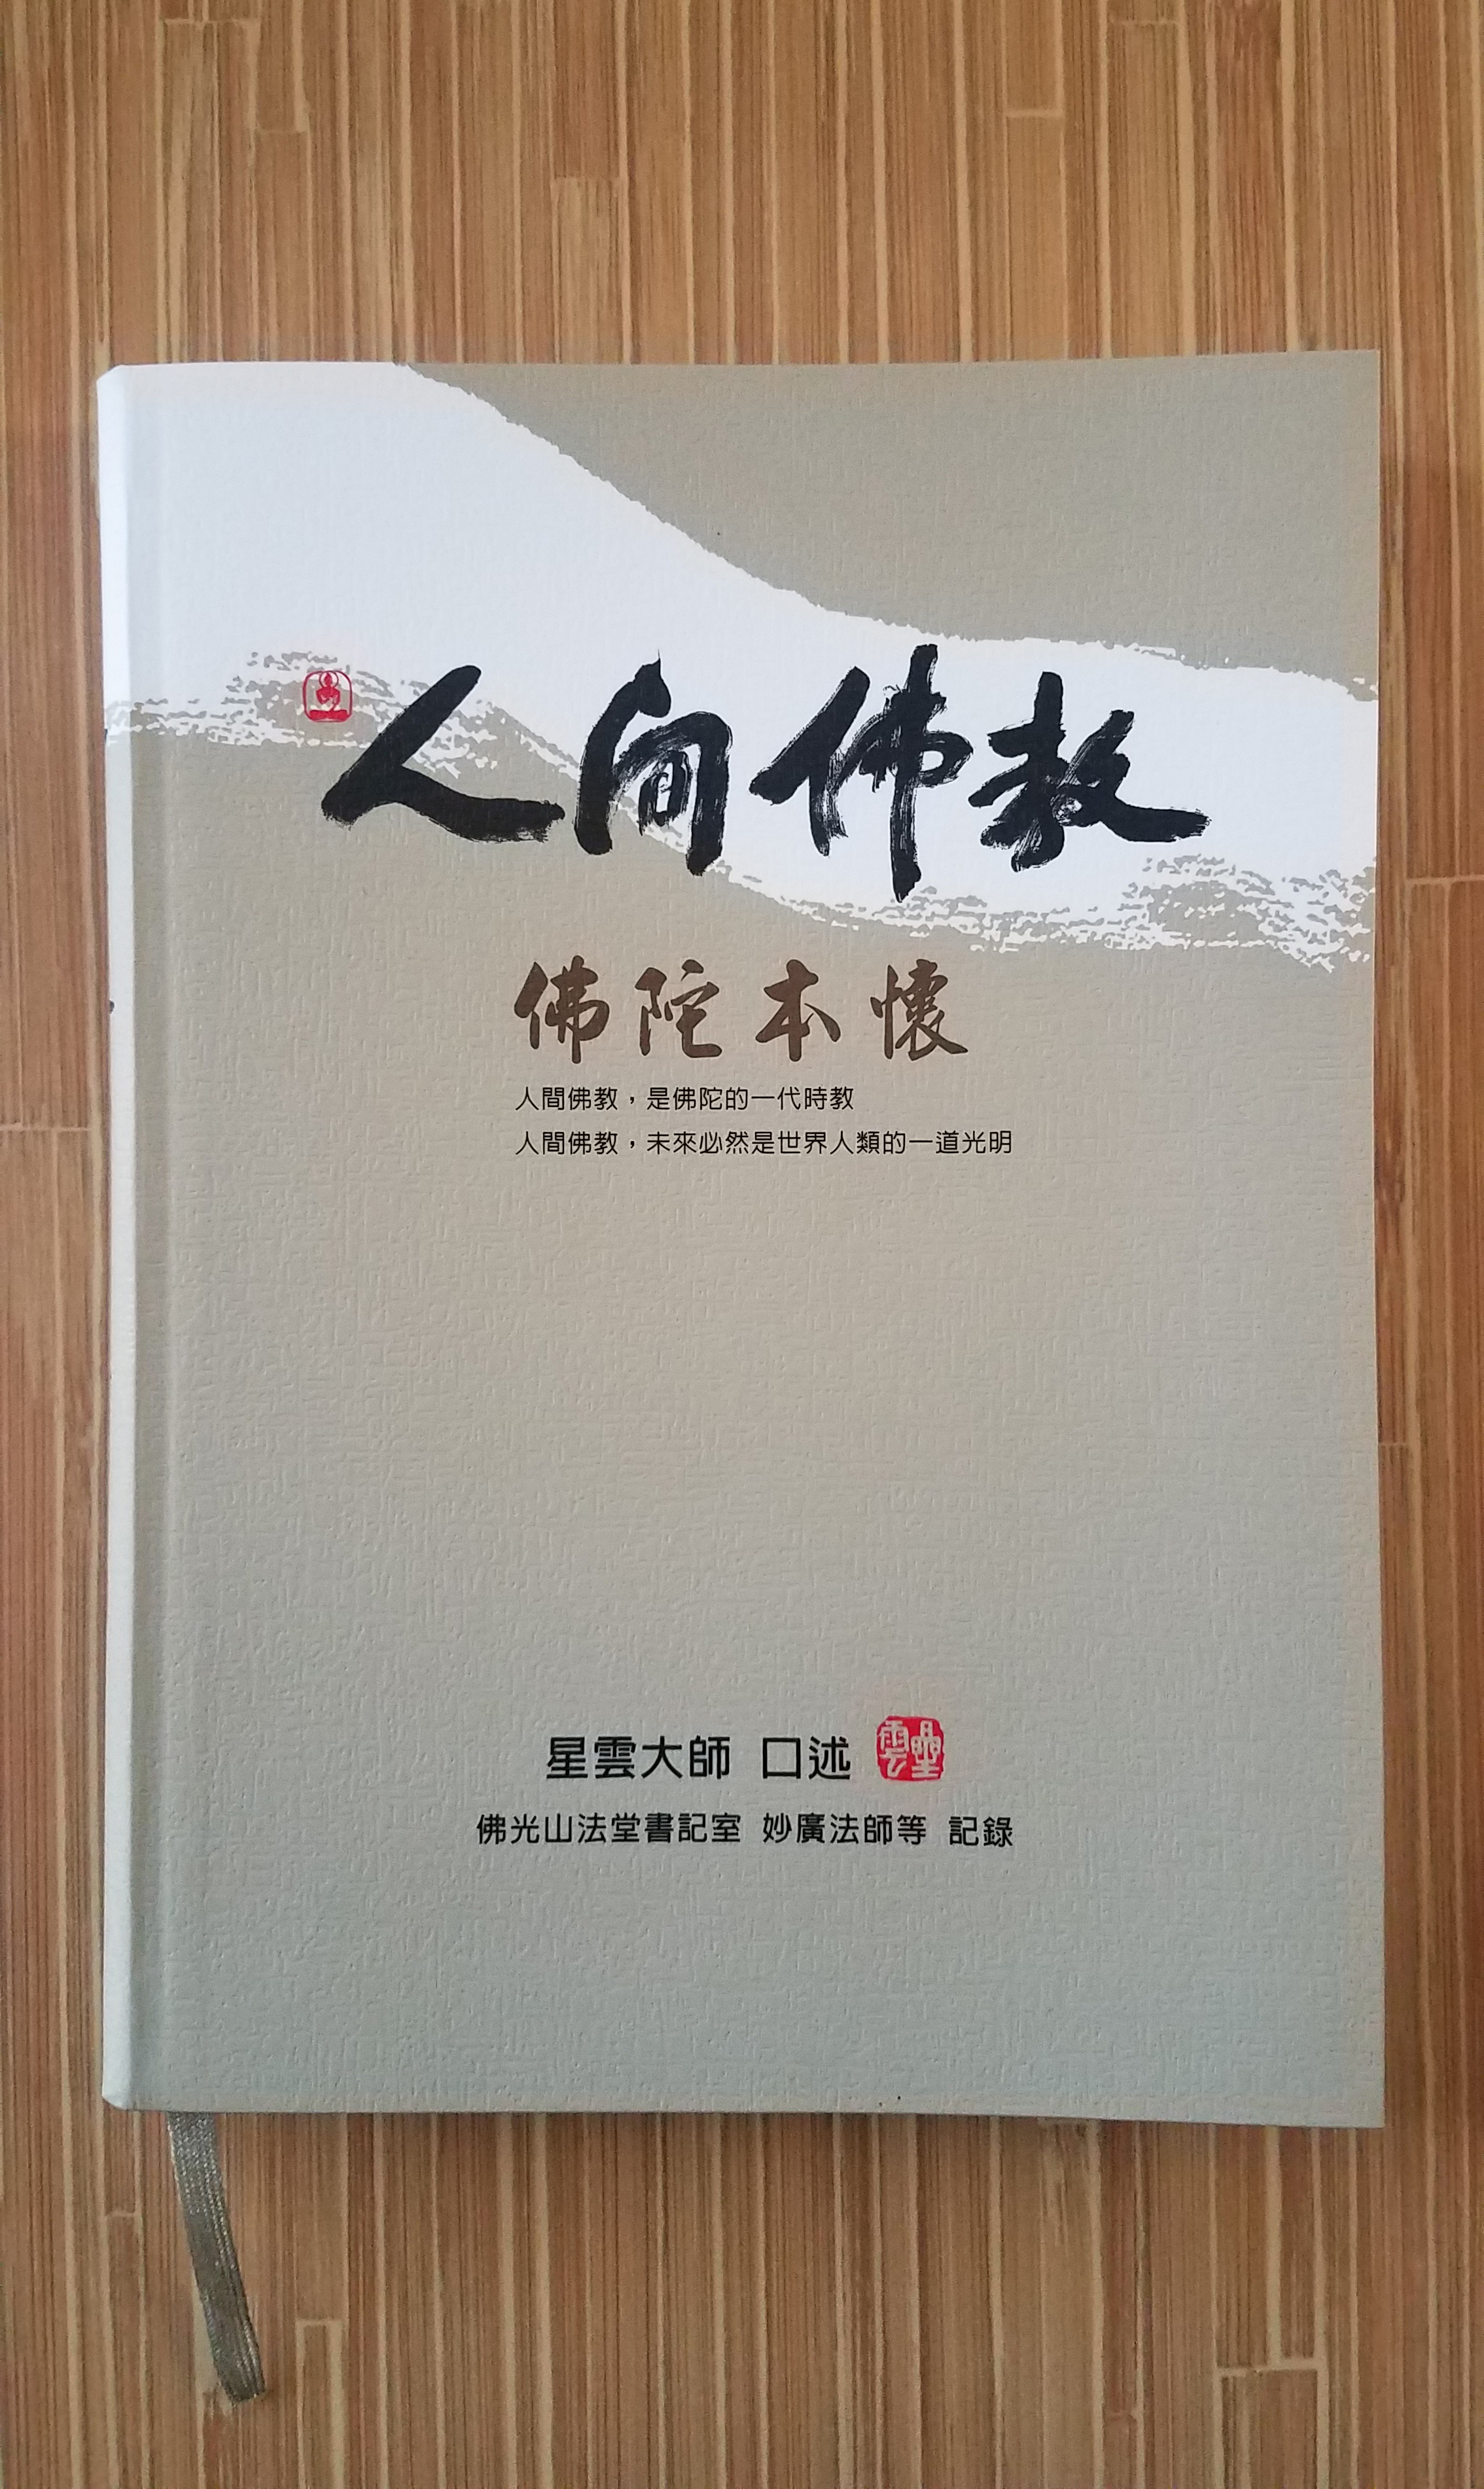 Book by Di PingZi狄潤君